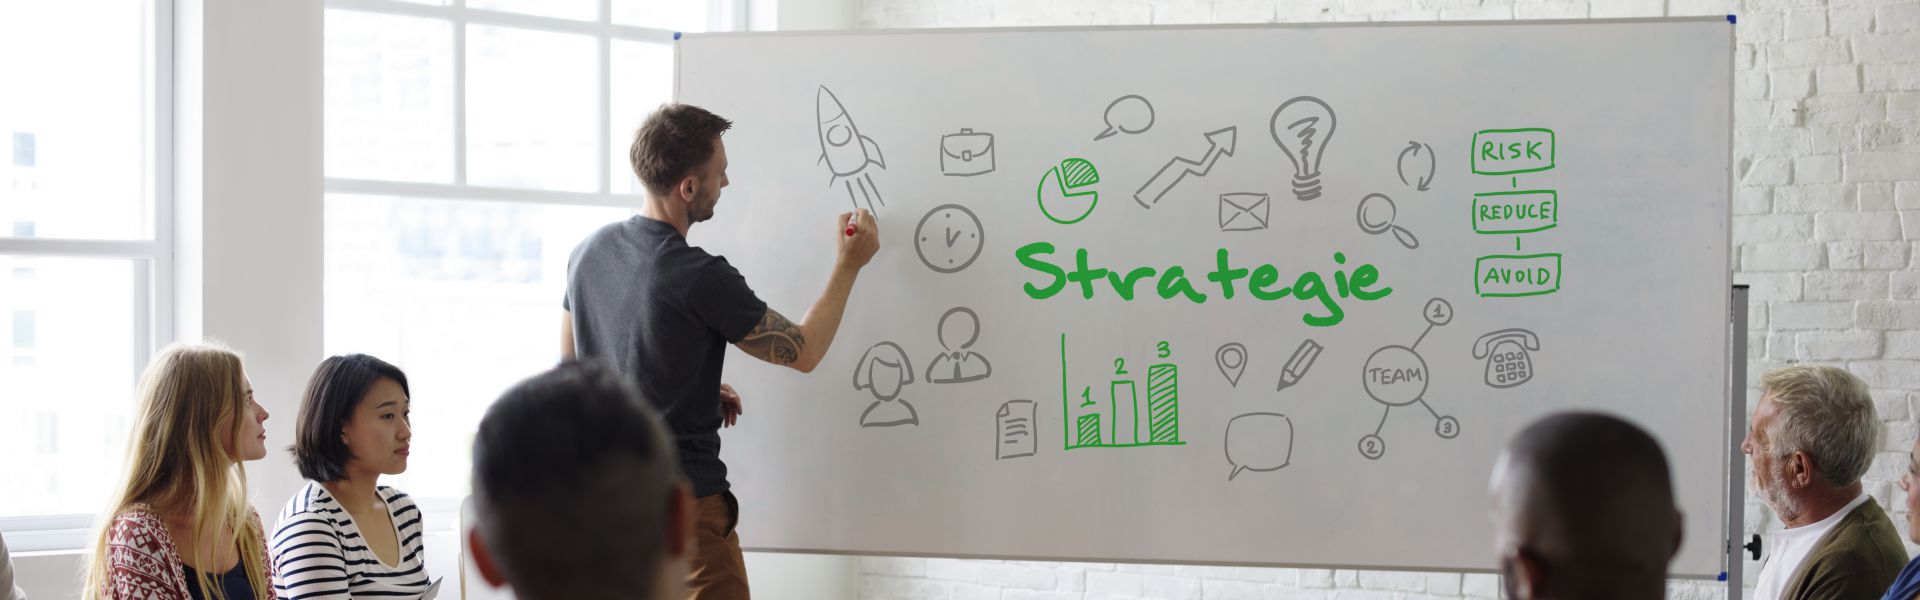 7 Strategische hendels voor een succesvolle organisatie (MBA)